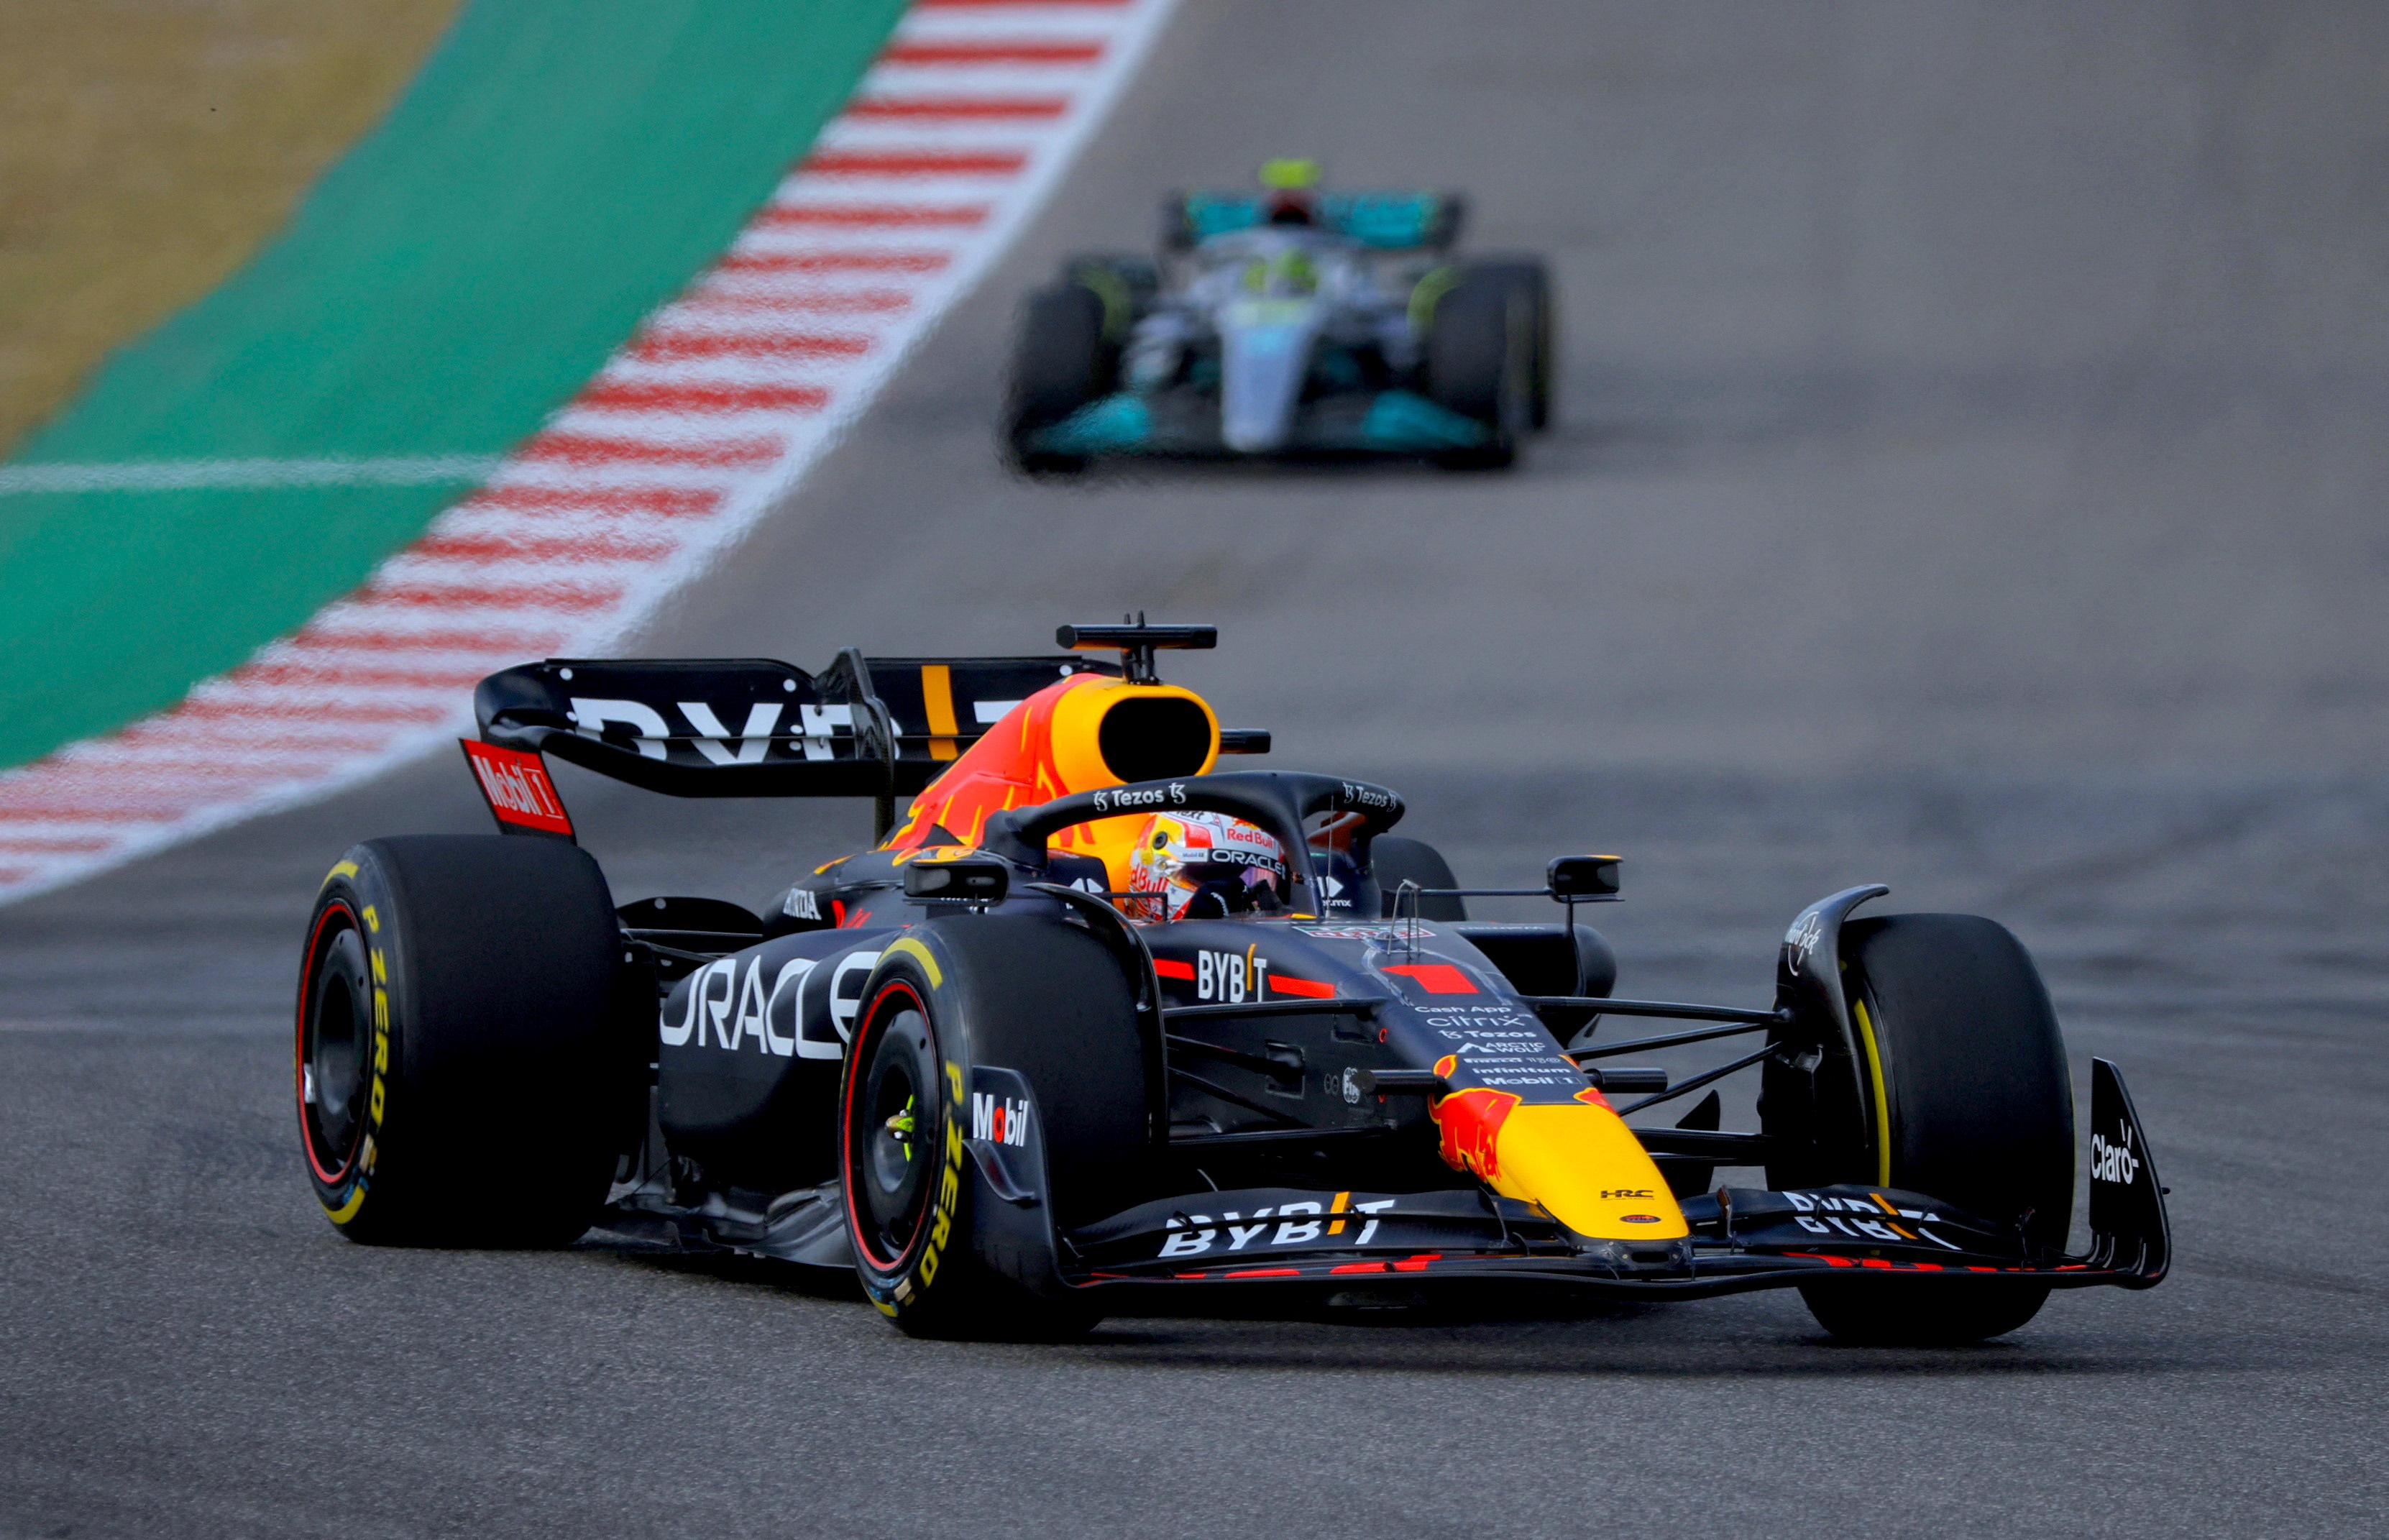 GP Amerika Serikat: Max Verstappen Terdepan, Red Bull Kunci Gelar Juara Konstruktor